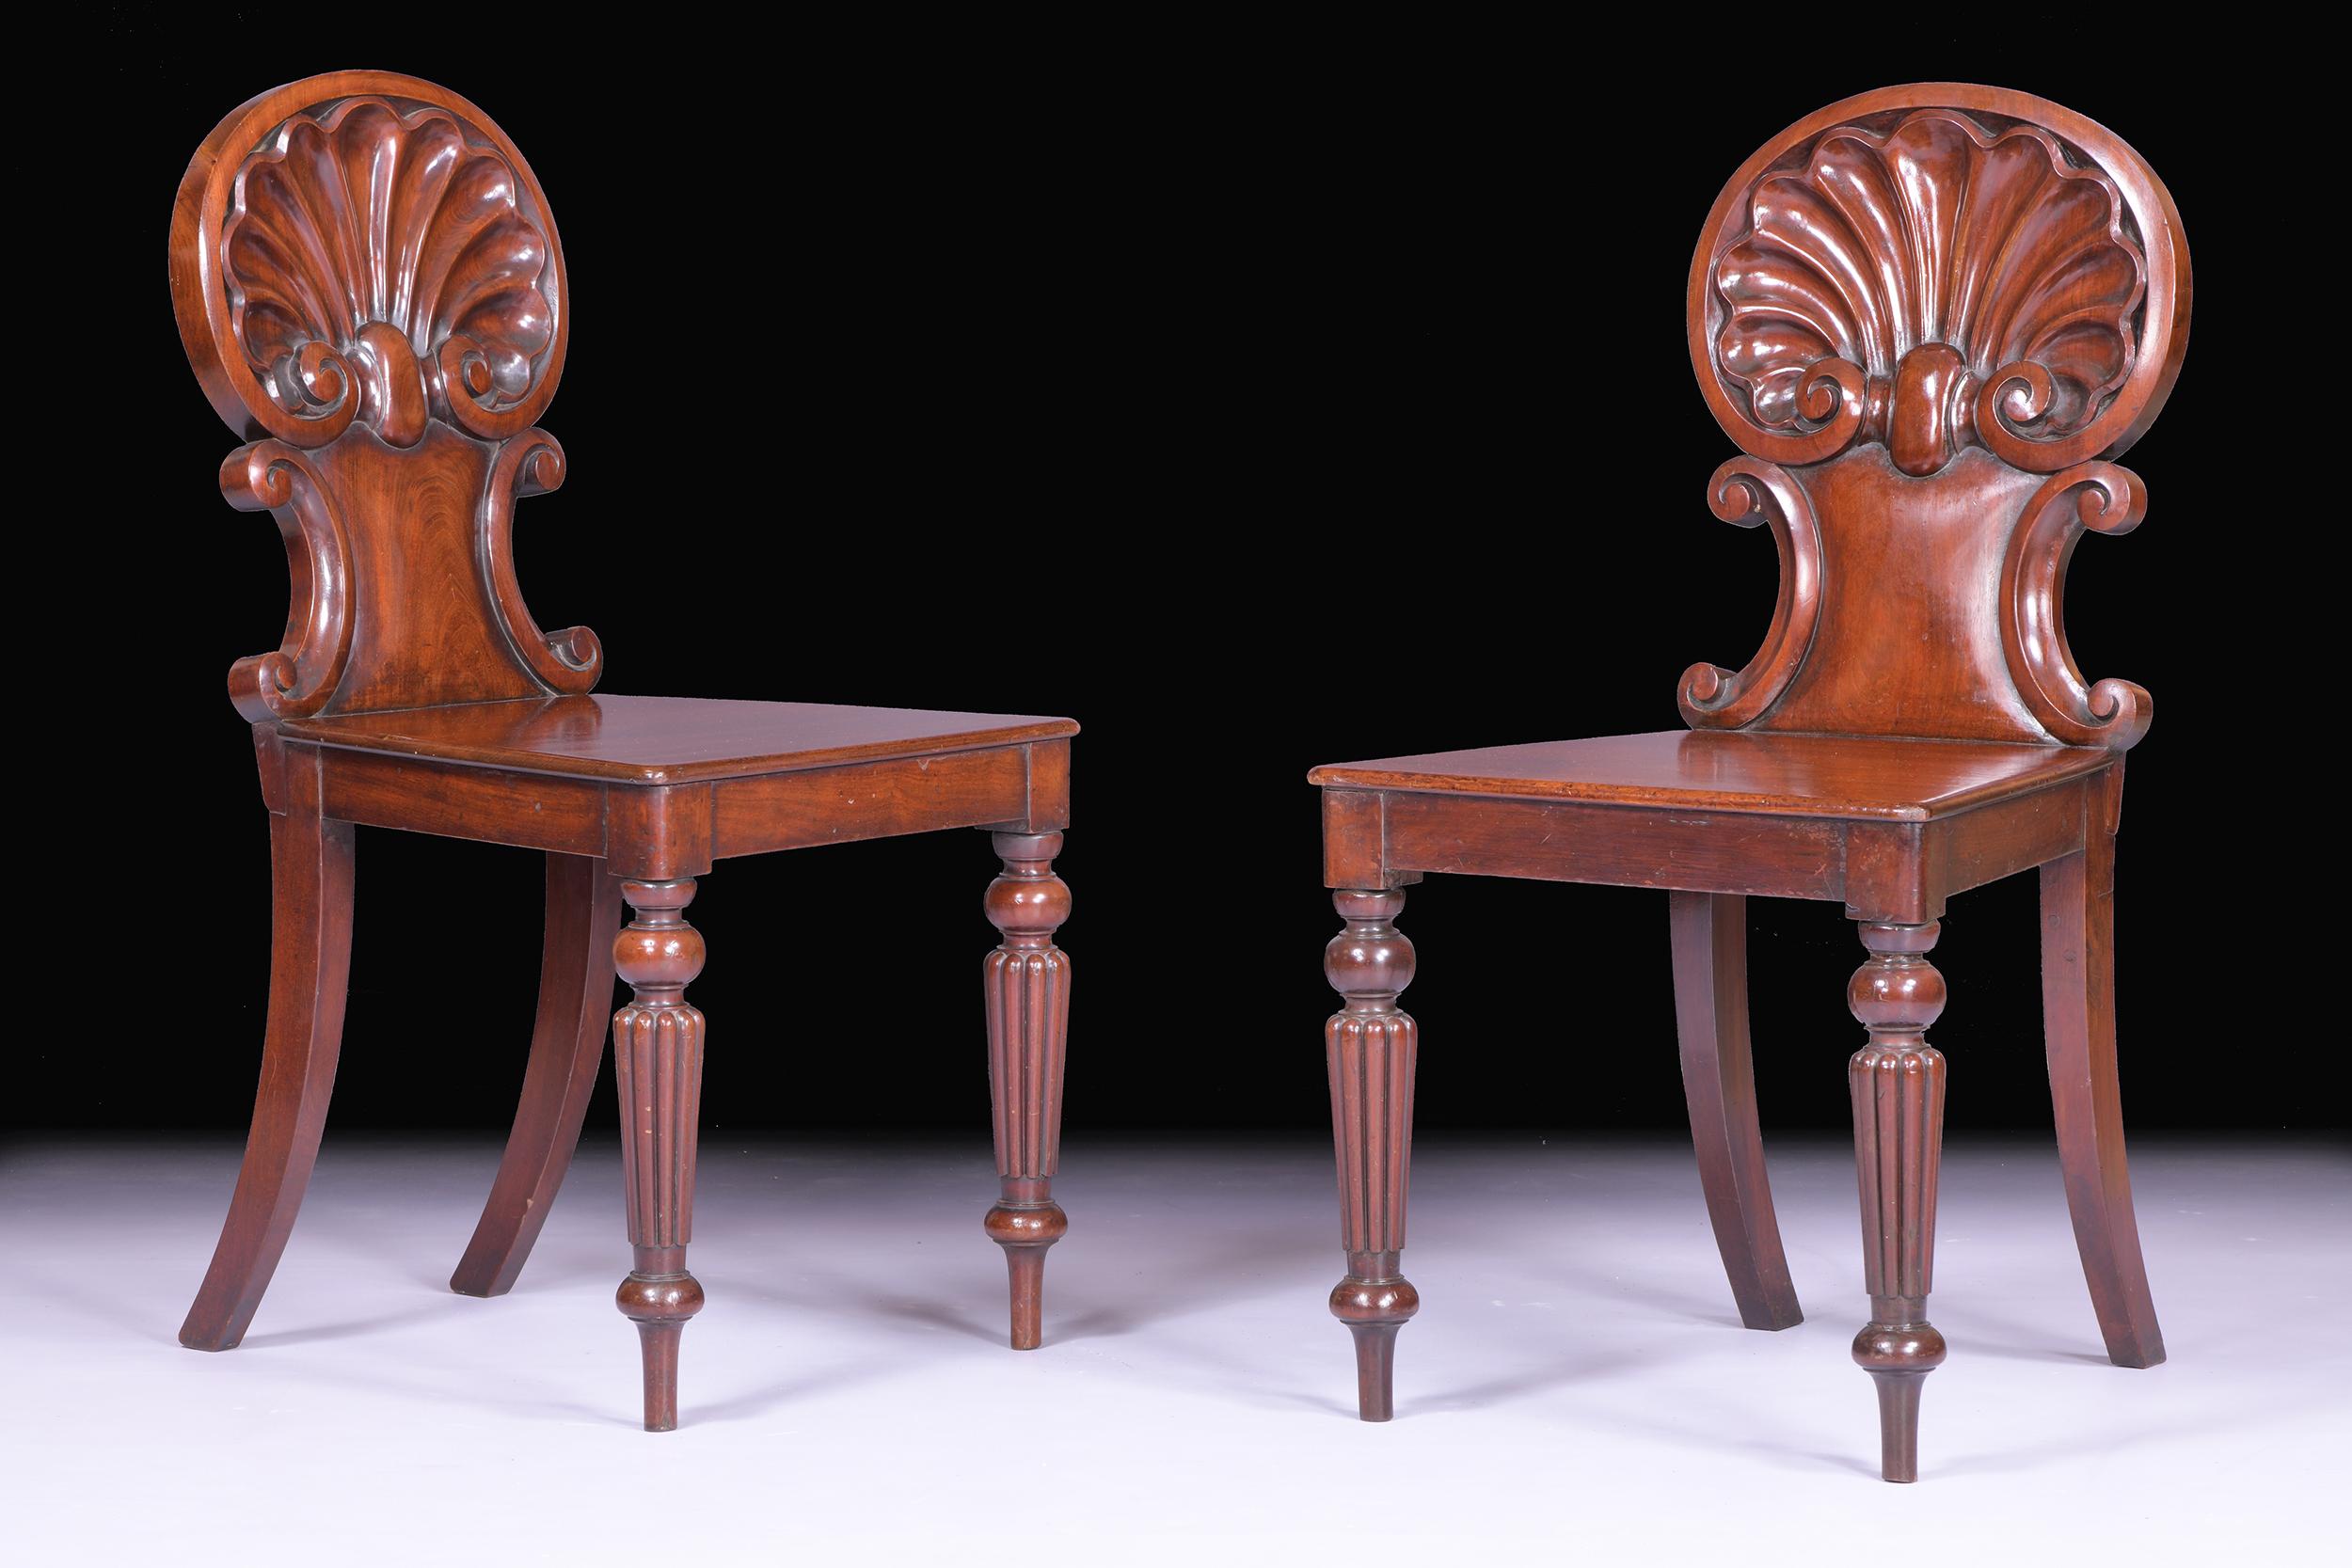 Une belle paire de chaises d'entrée / d'appoint Regency attribuées à Gillows of Lancaster, avec des dossiers en coquille de Saint-Jacques sculptés, des sièges en panneau, le tout reposant sur des pieds en colonne cannelée.

Circa 1820

Anglais.